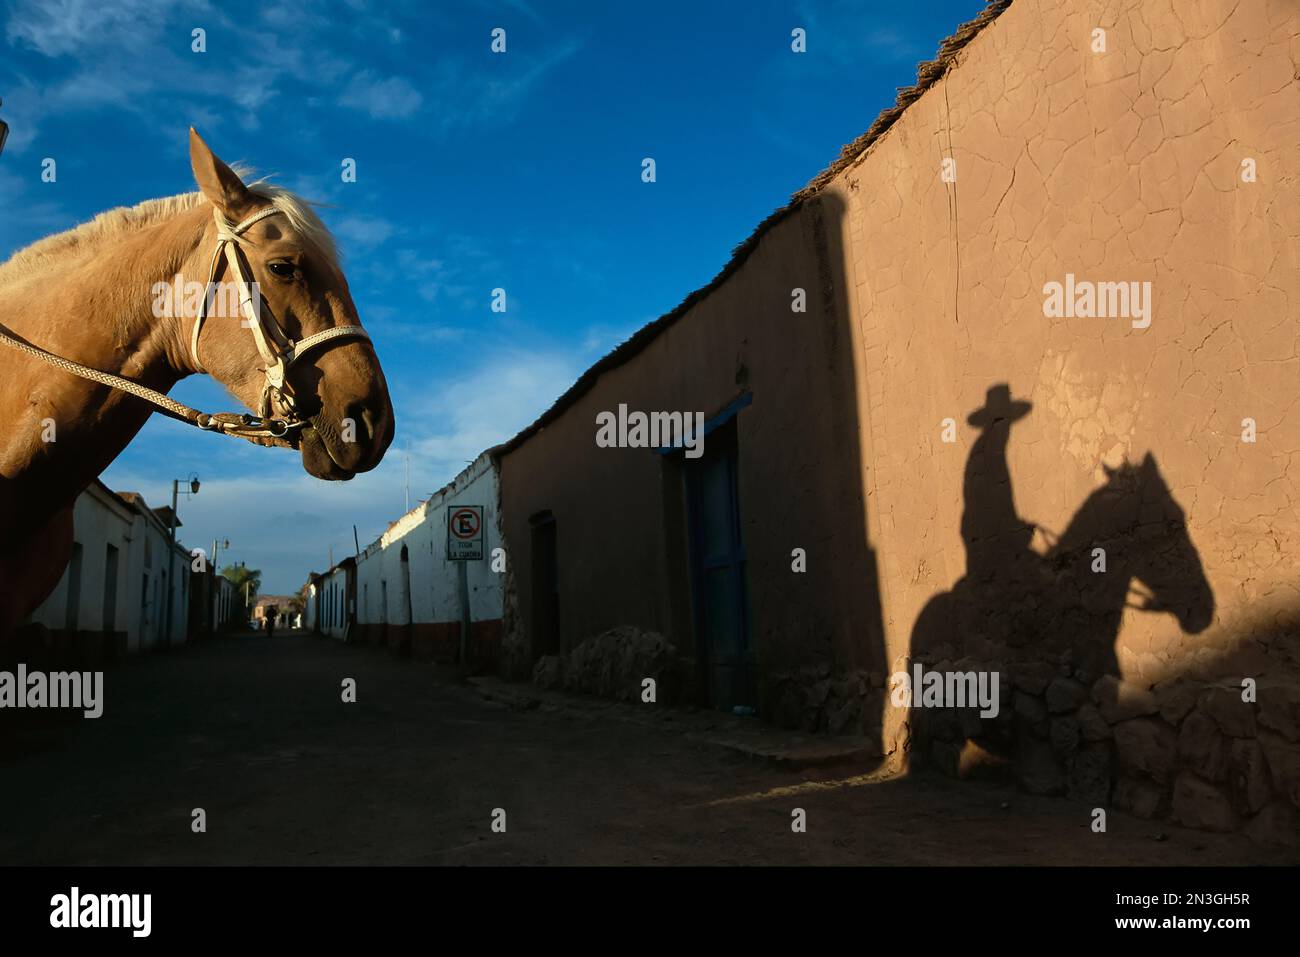 Un cheval et un cavalier jettent une ombre sur un mur en adobe Photo Stock  - Alamy